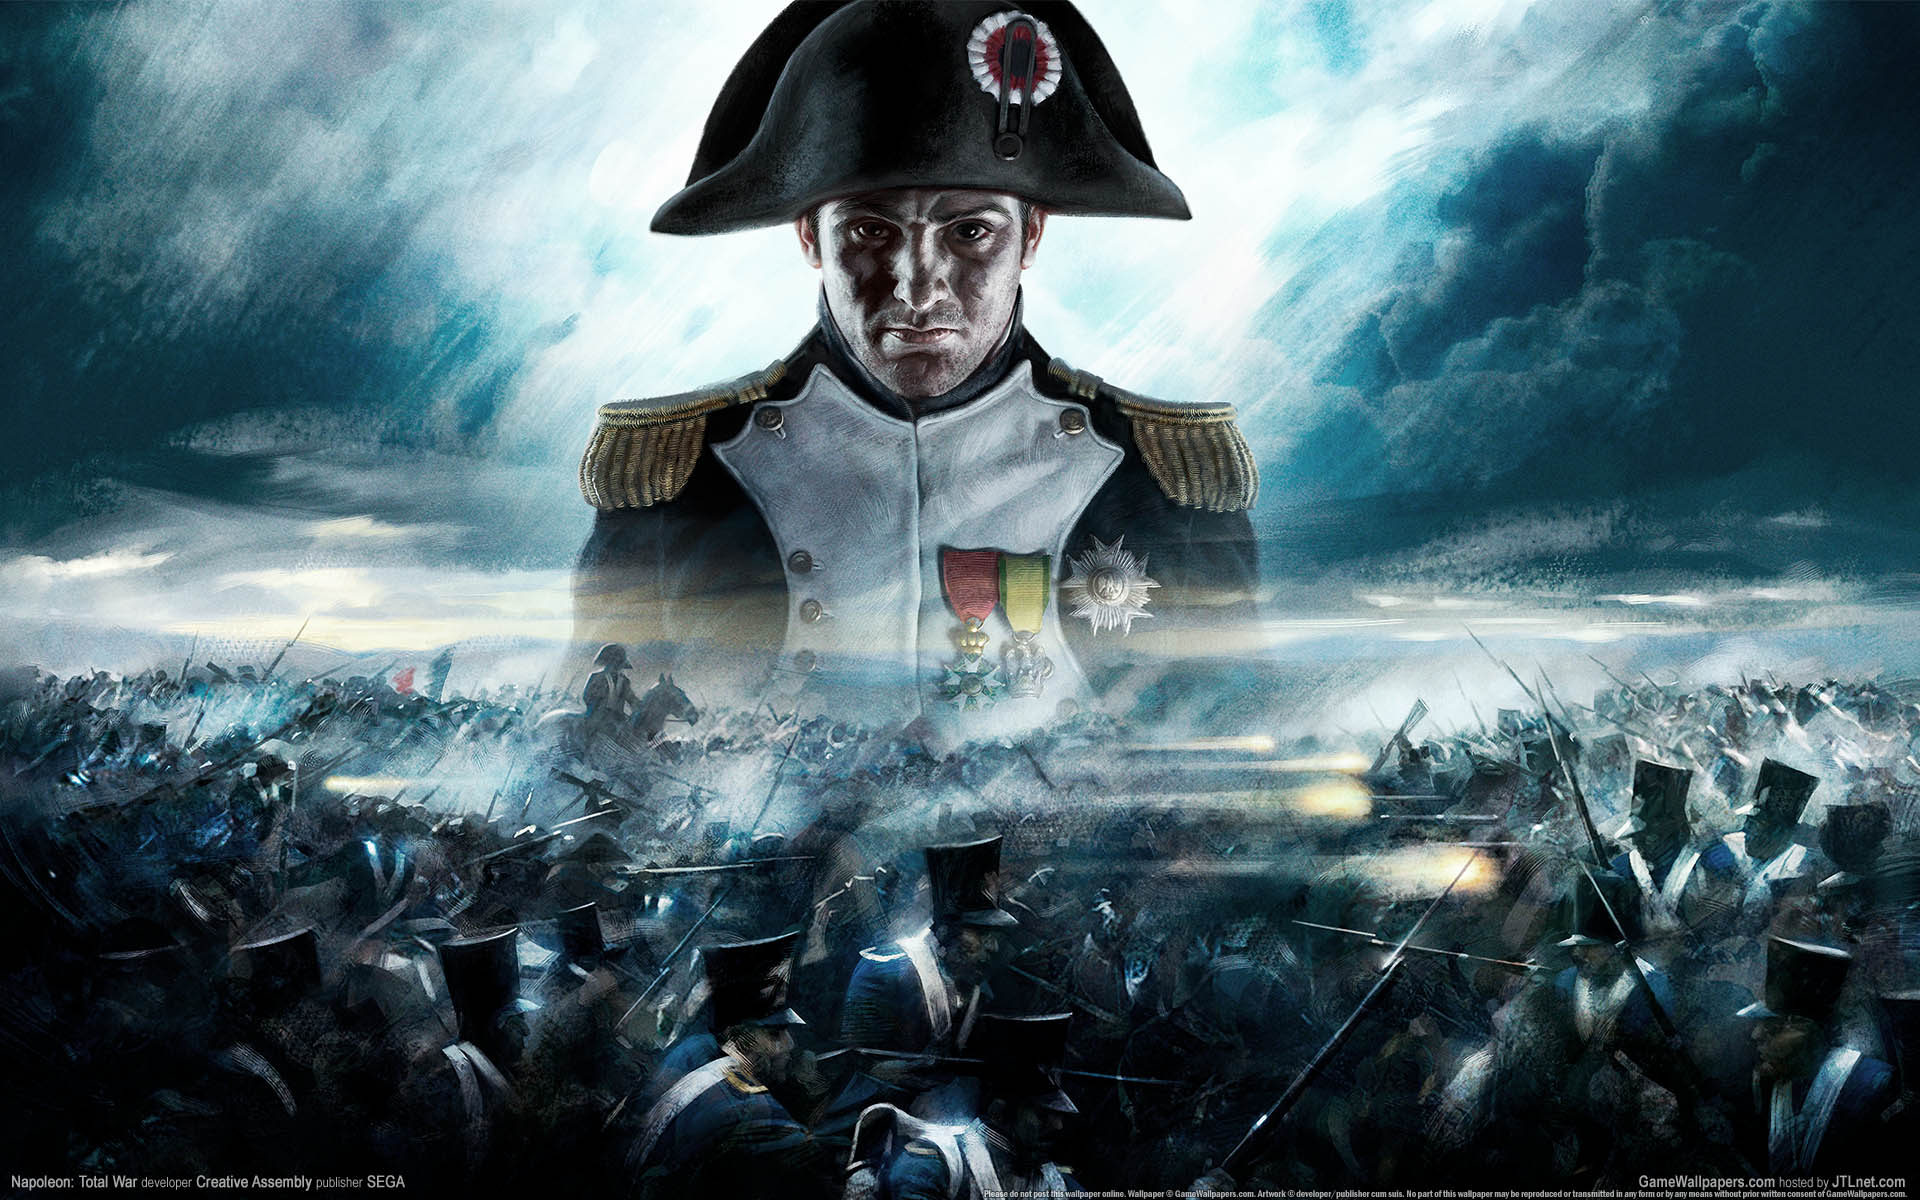 Fond ecran, wallpaper Napoleon : Total War - JeuxVideo.fr